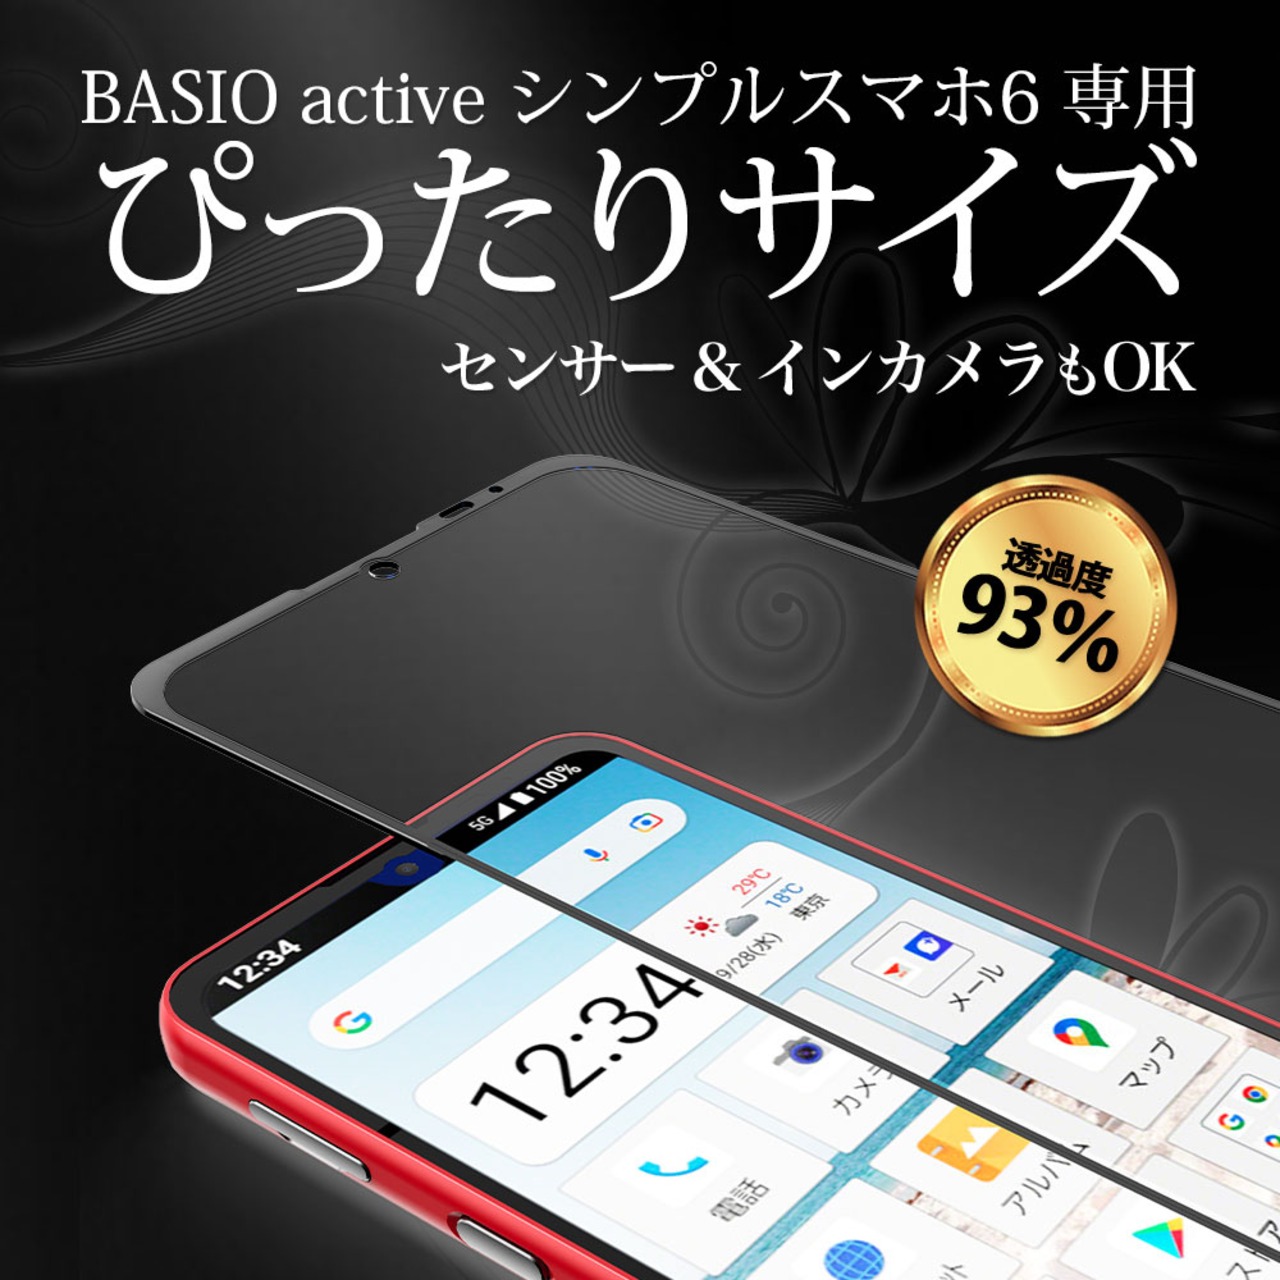 Hy+ BASIO active シンプルスマホ6 フィルム SHG09 ガラスフィルム W硬化製法 一般ガラスの3倍強度 全面保護 全面吸着 日本産ガラス使用 厚み0.33mm ブラック